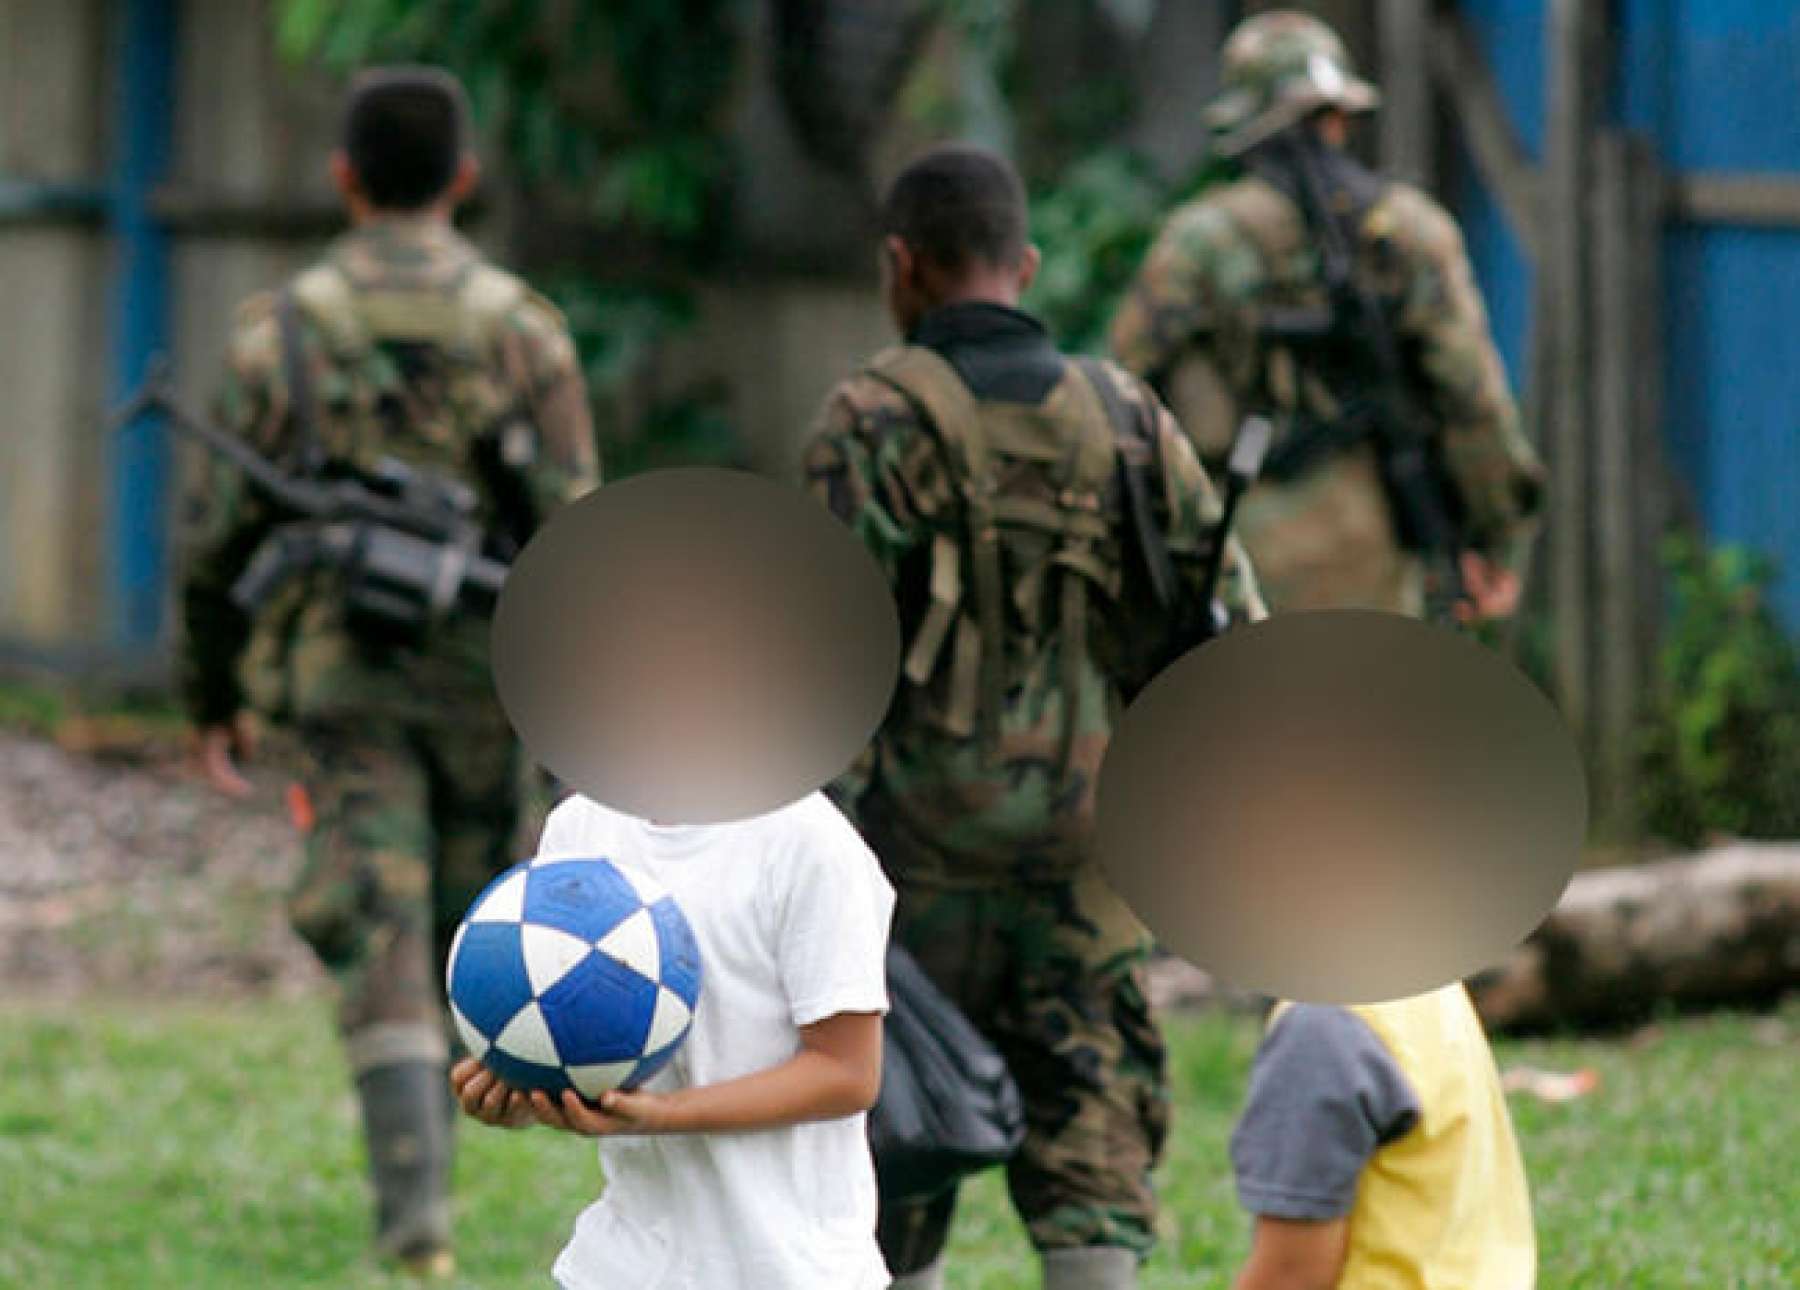 Cabecillas de grupos armados estarían reclutando menores para ‘satisfacer placeres’